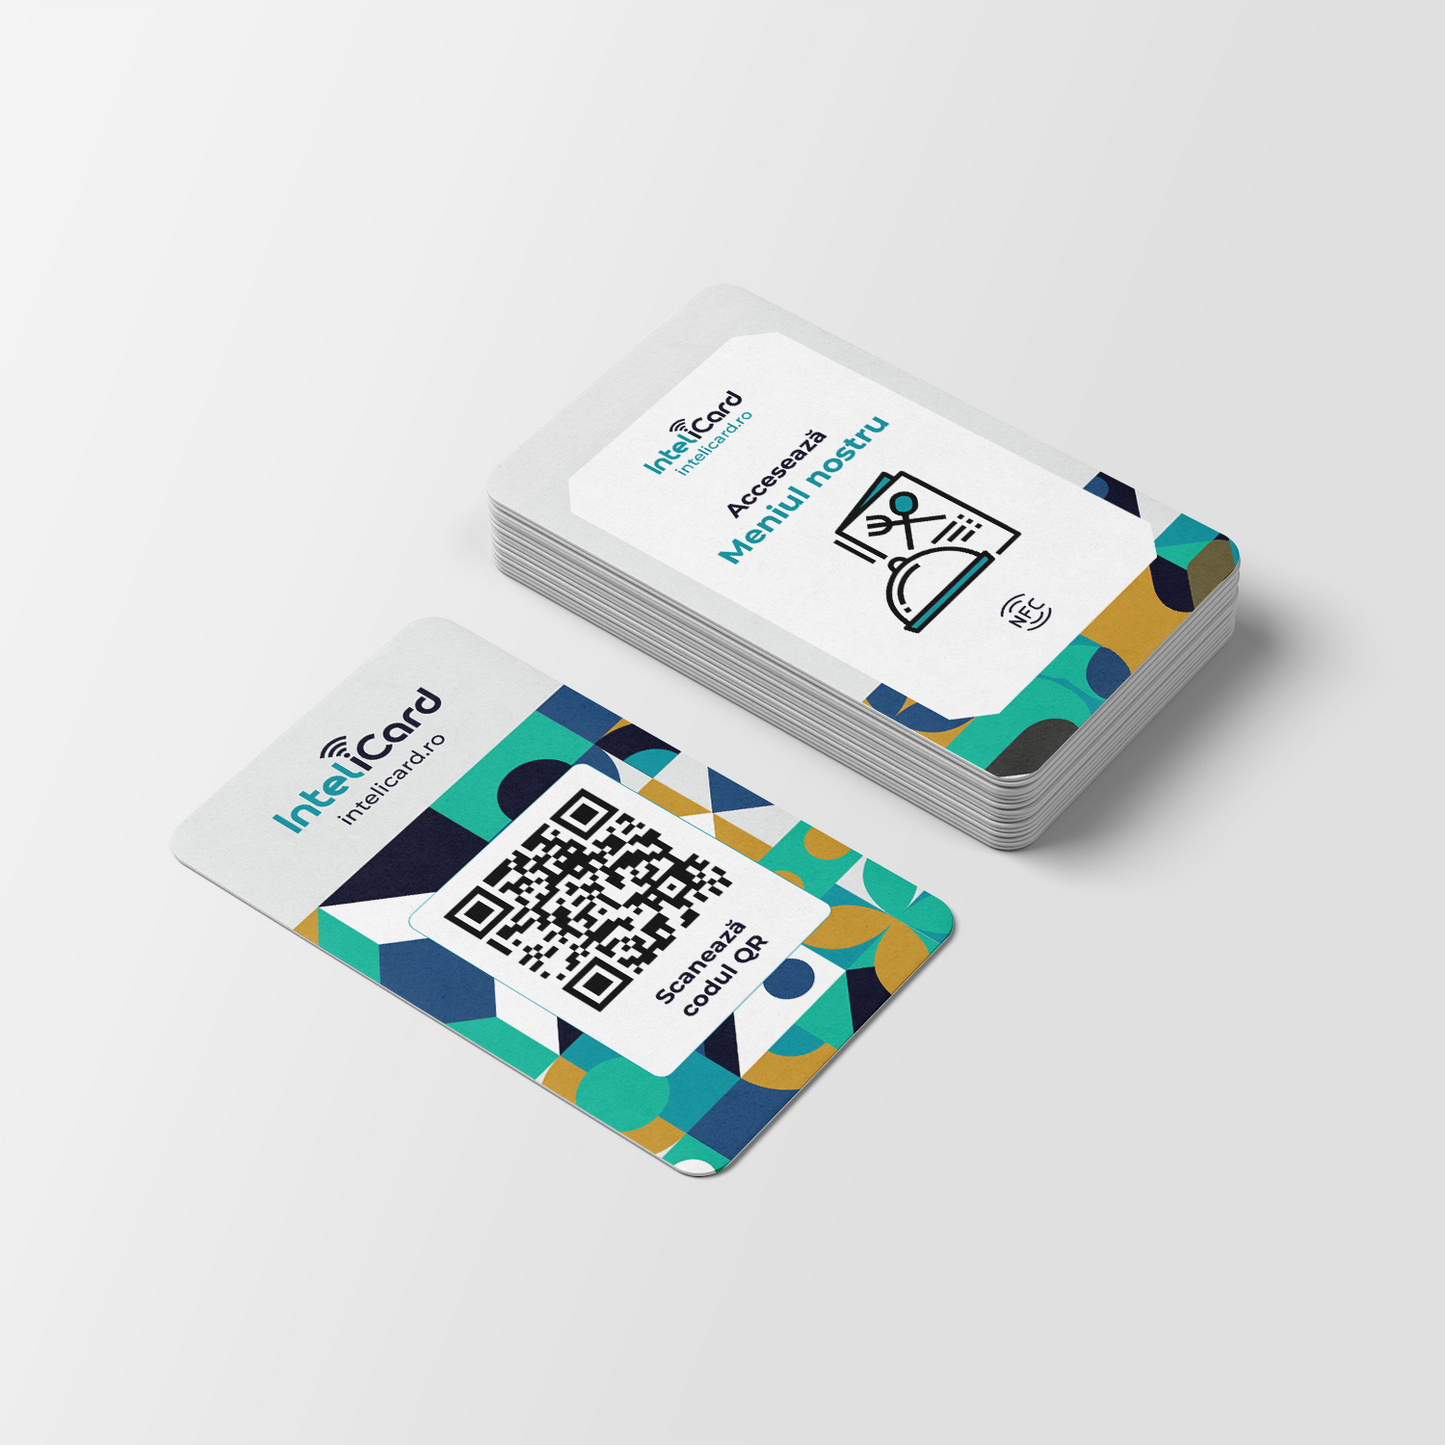 InteliCard - Card Prezentare Meniu